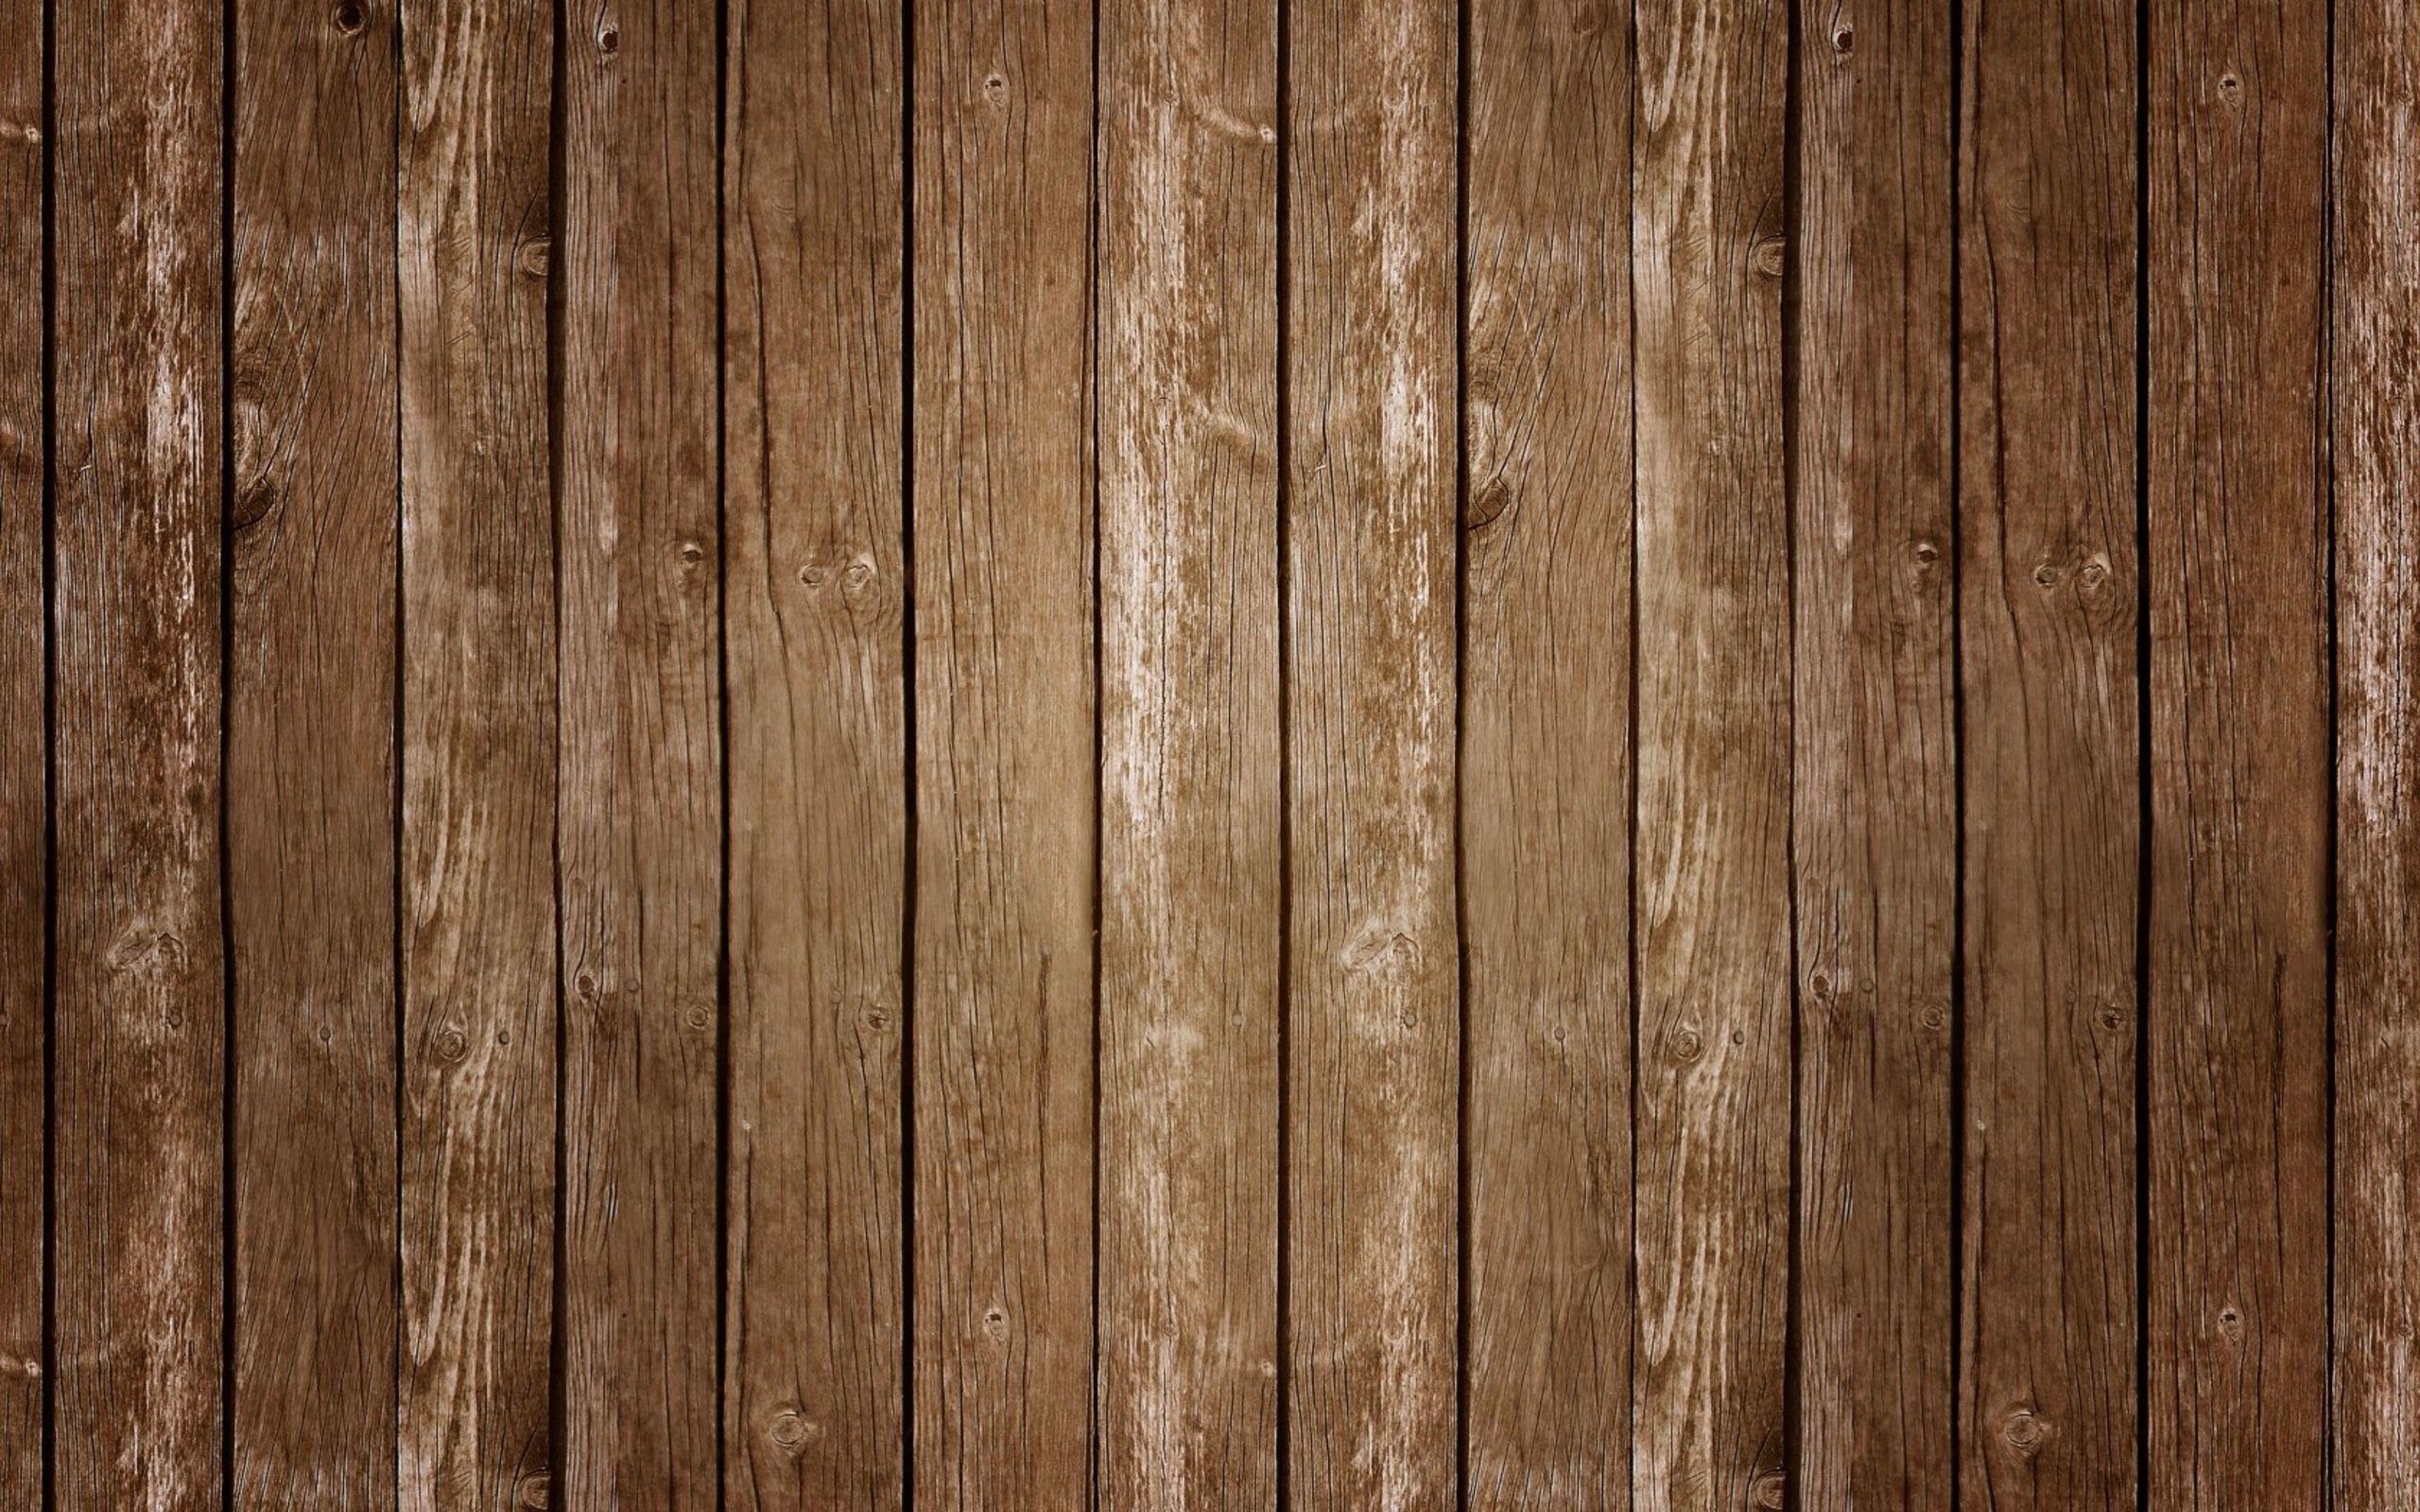 Hình nền : đen, Chủ nghĩa tối giản, Bề mặt gỗ, Tường, Gỗ, mẫu, kết cấu,  Ván, ánh sáng, sàn nhà, bóng tối 2560x1600 - RaidyHD - 124067 - Hình nền  đẹp hd - WallHere